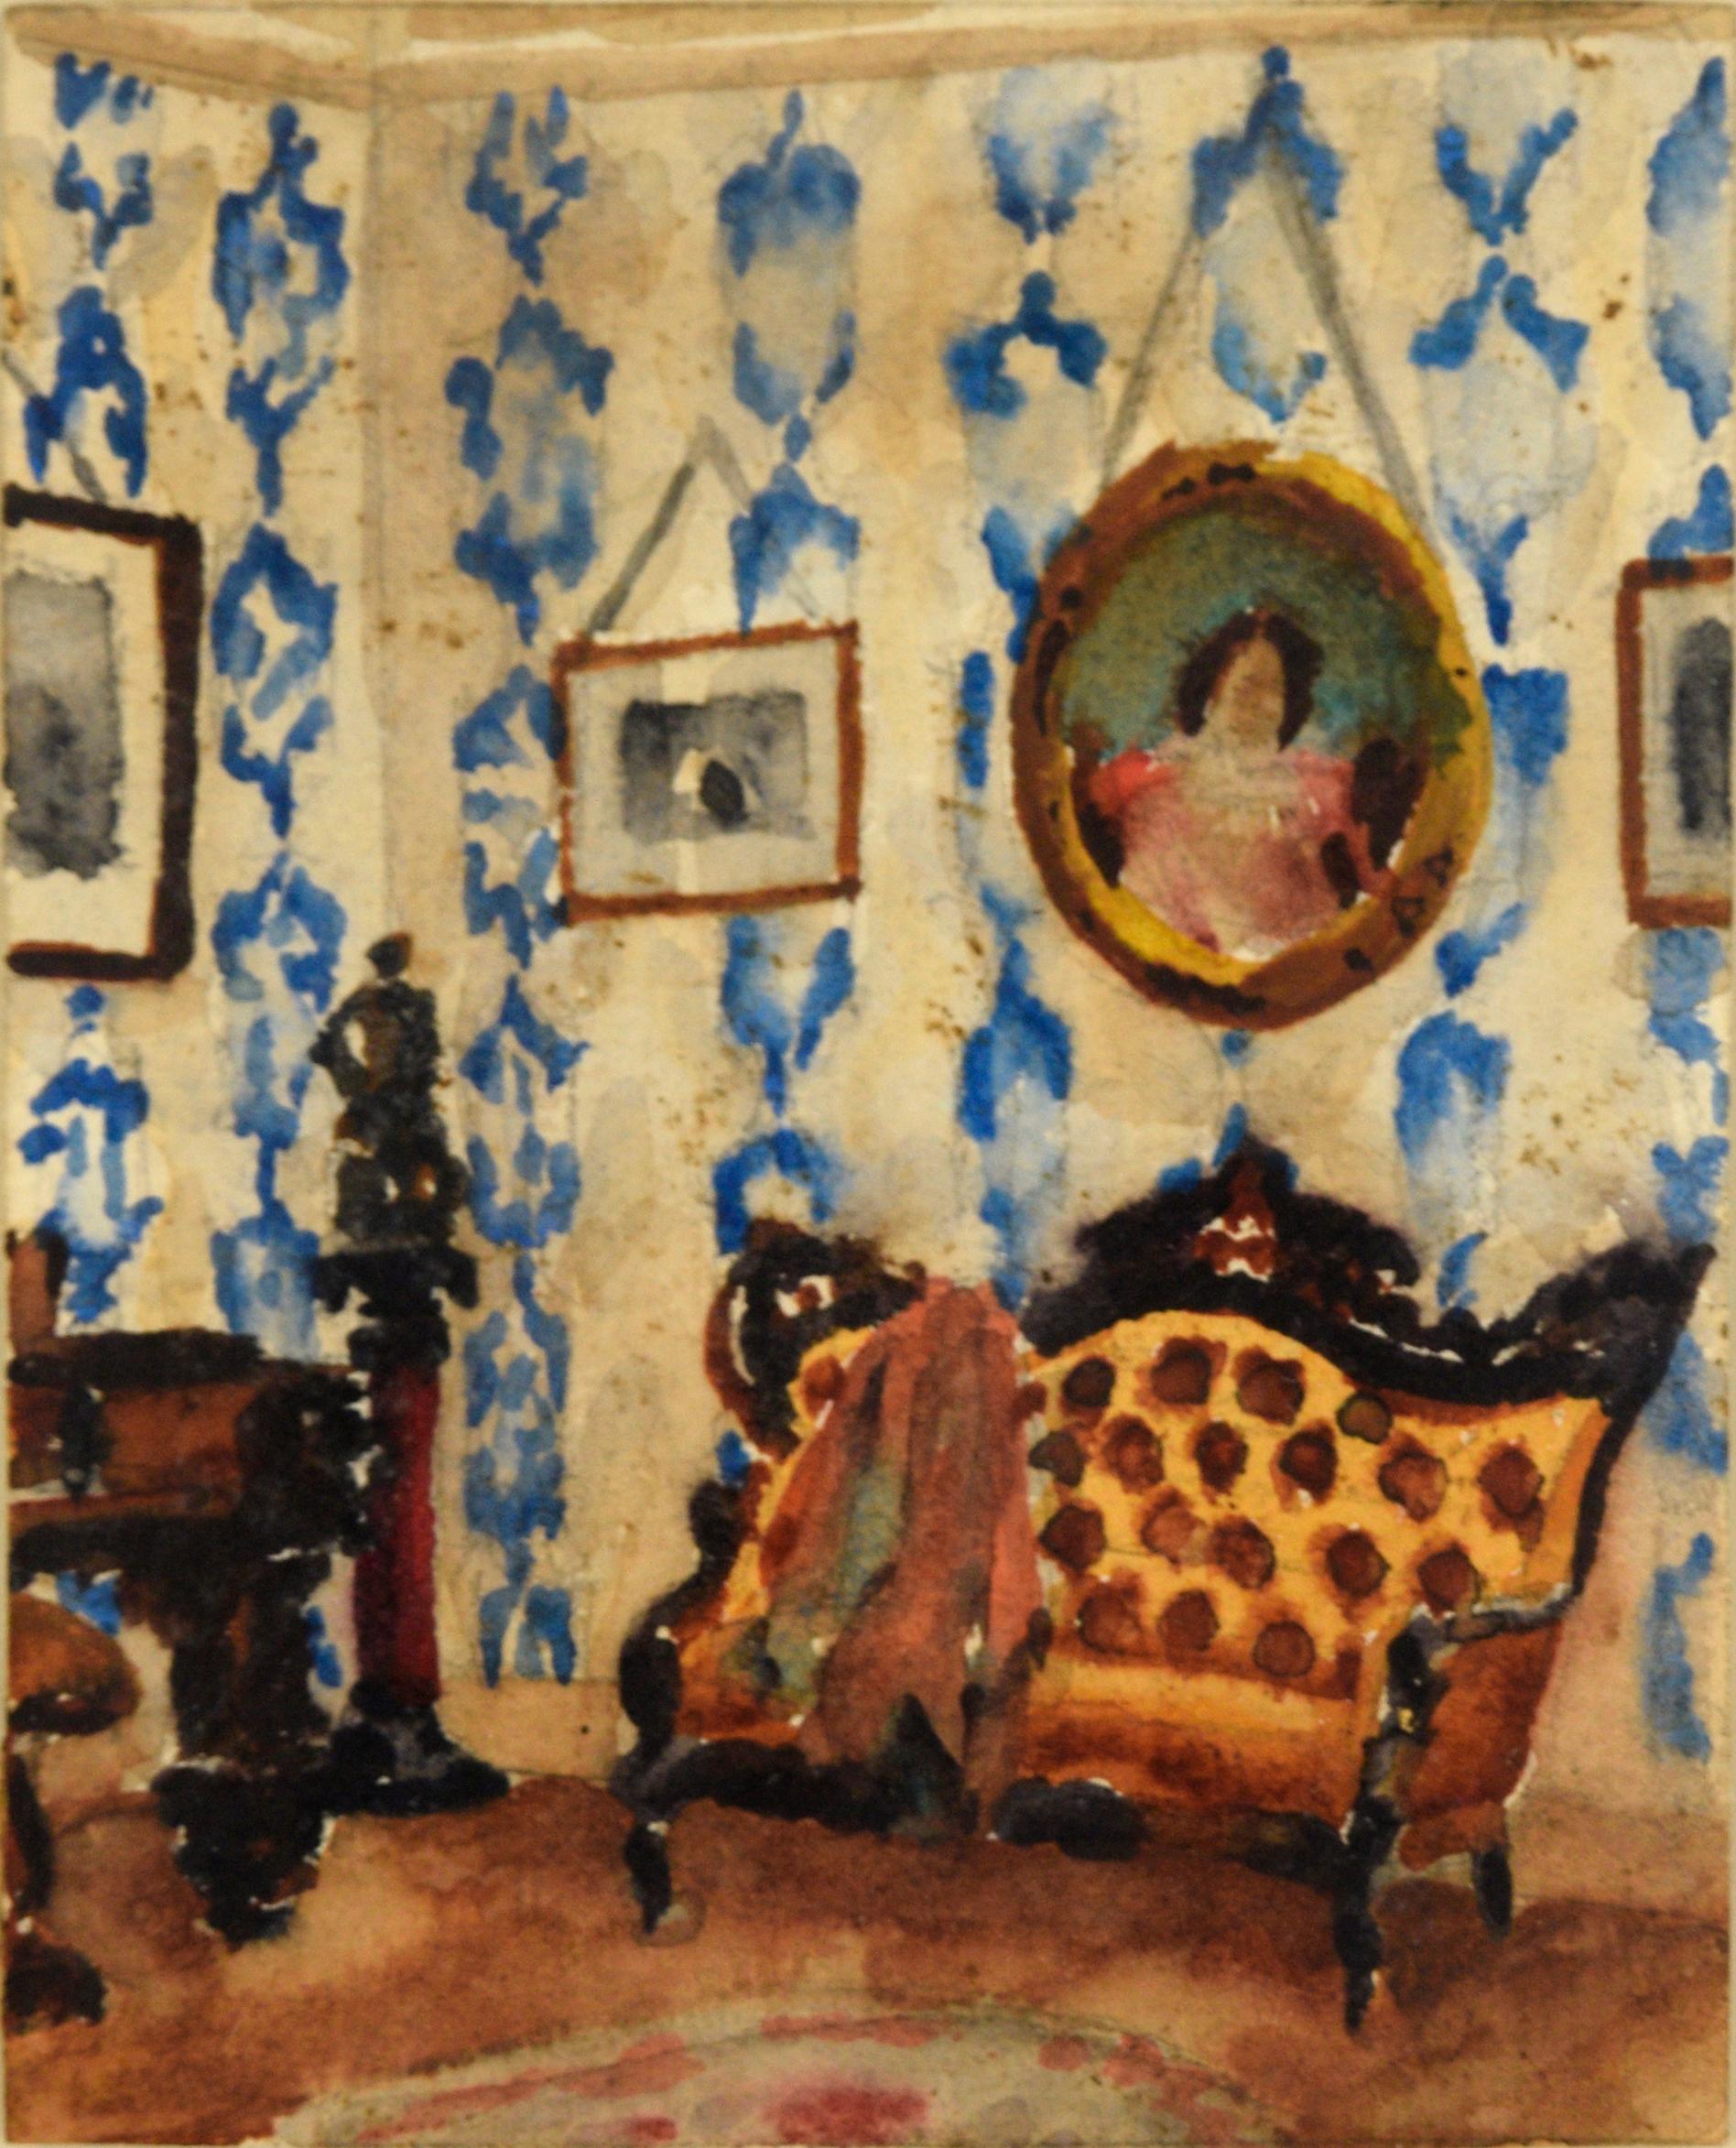 Ein stattliches Paar Aquarelle von David Mode Payne (Amerikaner, 1907-1985). Die dargestellte Szene ist das Innere eines opulenten Raums mit fein gearbeiteten Möbeln und Gemälden, die an einer Wand mit blau gemusterter Tapete hängen. Die Szene setzt